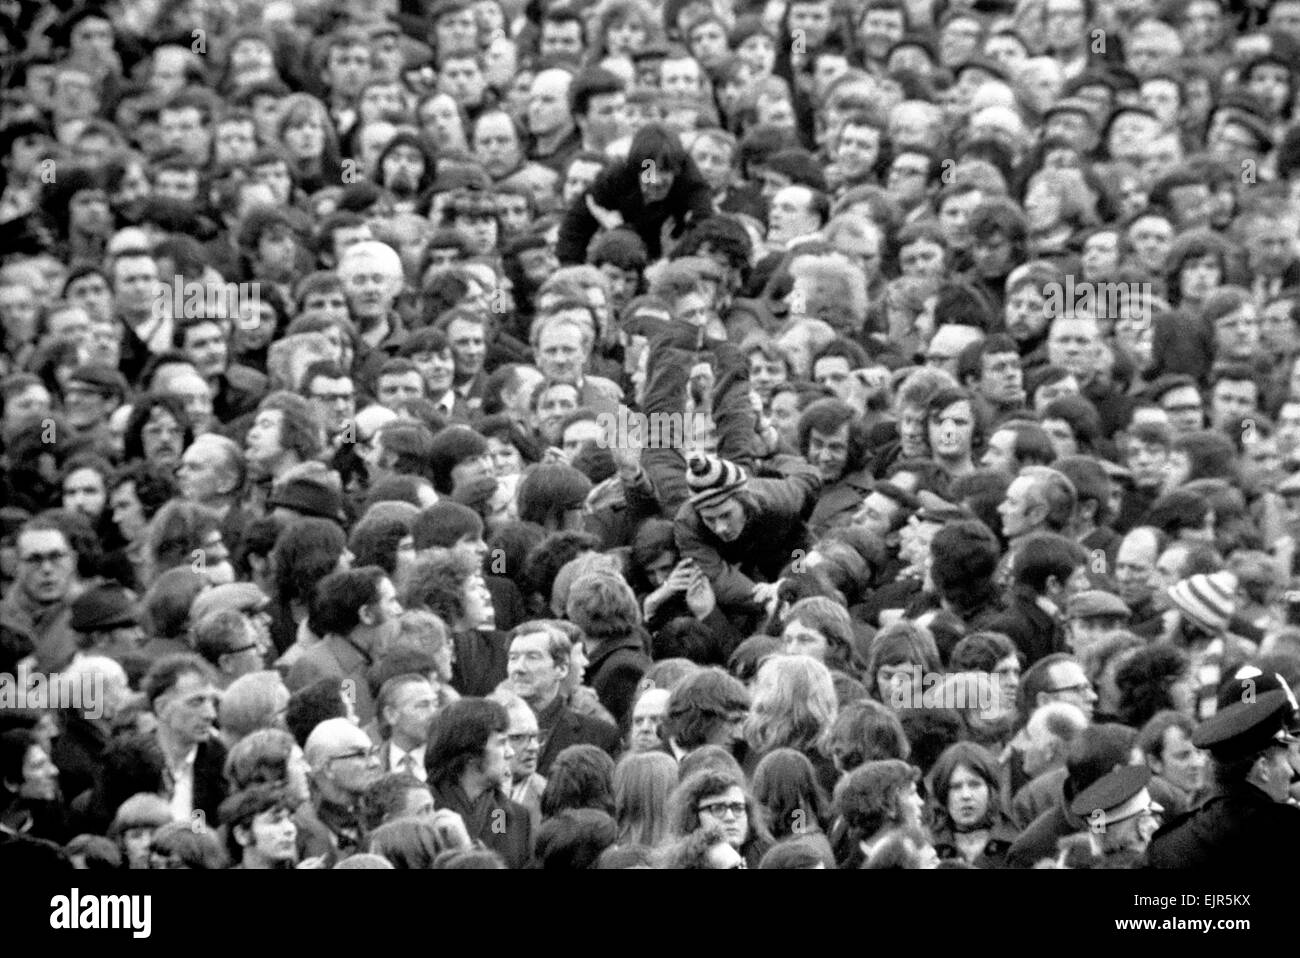 Arsenal v. Derby County F.A. Cup 5ª ronda replay. Barrera da paso al Arsenal. Un flechazo barrera dio paso al partido de fútbol entre el Arsenal y el derby t. Multitud de espectadores, incluidos muchos niños derramado en el tono. Febrero de 1972 72-1956-025 Foto de stock